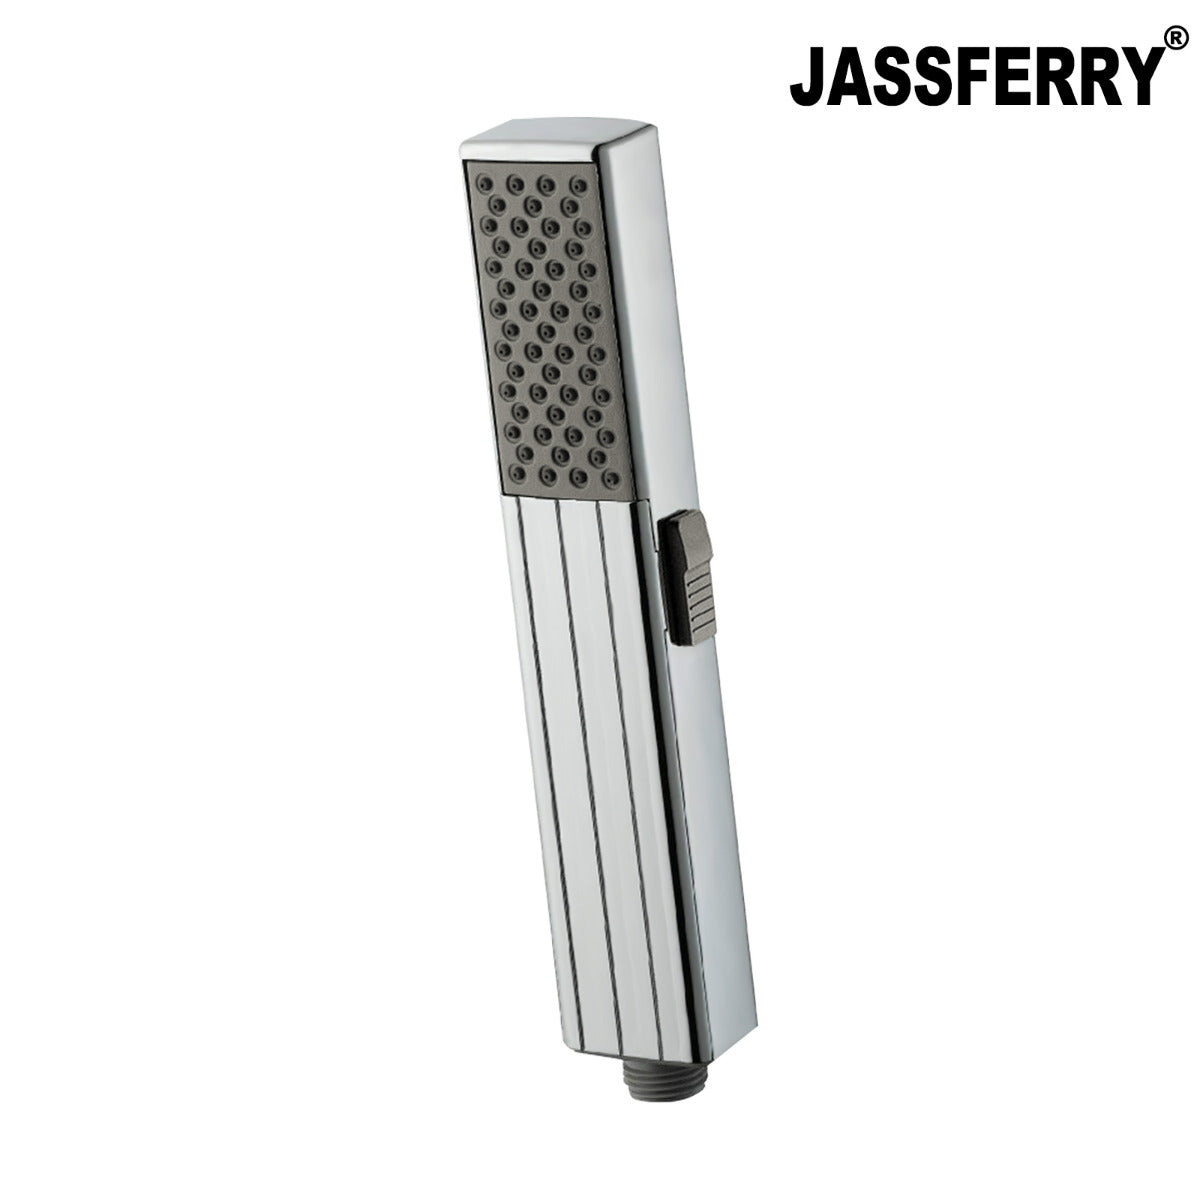 JassferryJASSFERRY 2 Function Modern Square Shower Handset Massage Soft Spray ChromeShower Heads